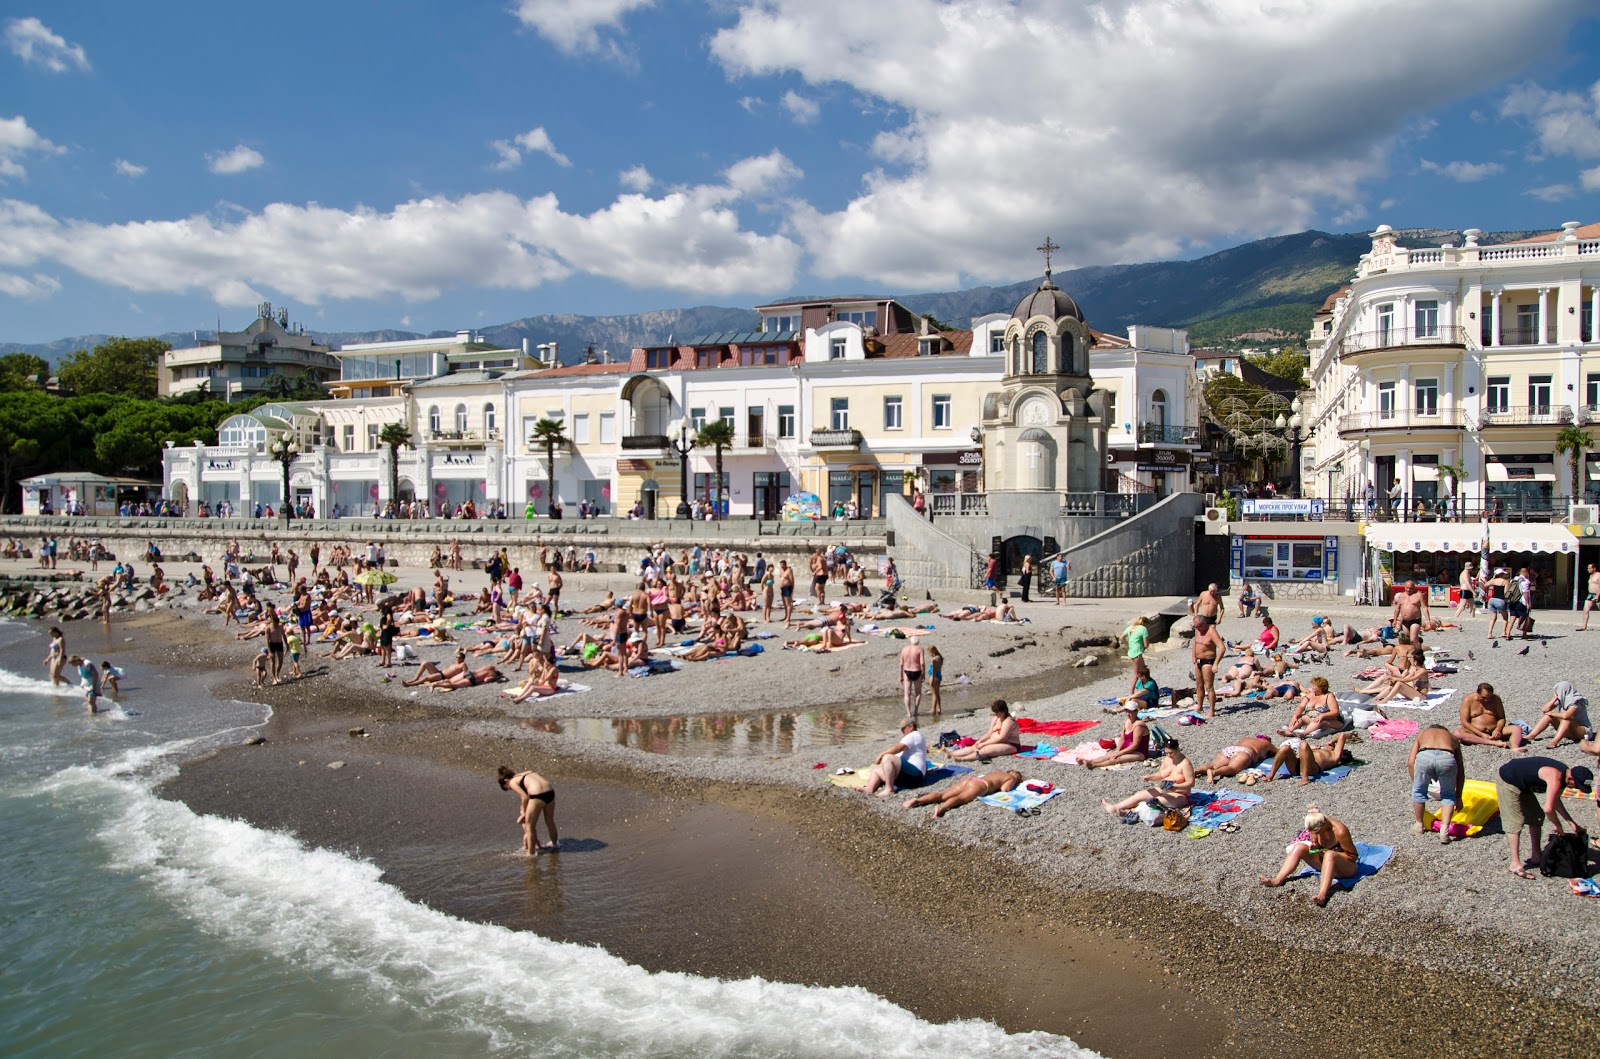 Yalta mini beach'in fotoğrafı küçük koy ile birlikte